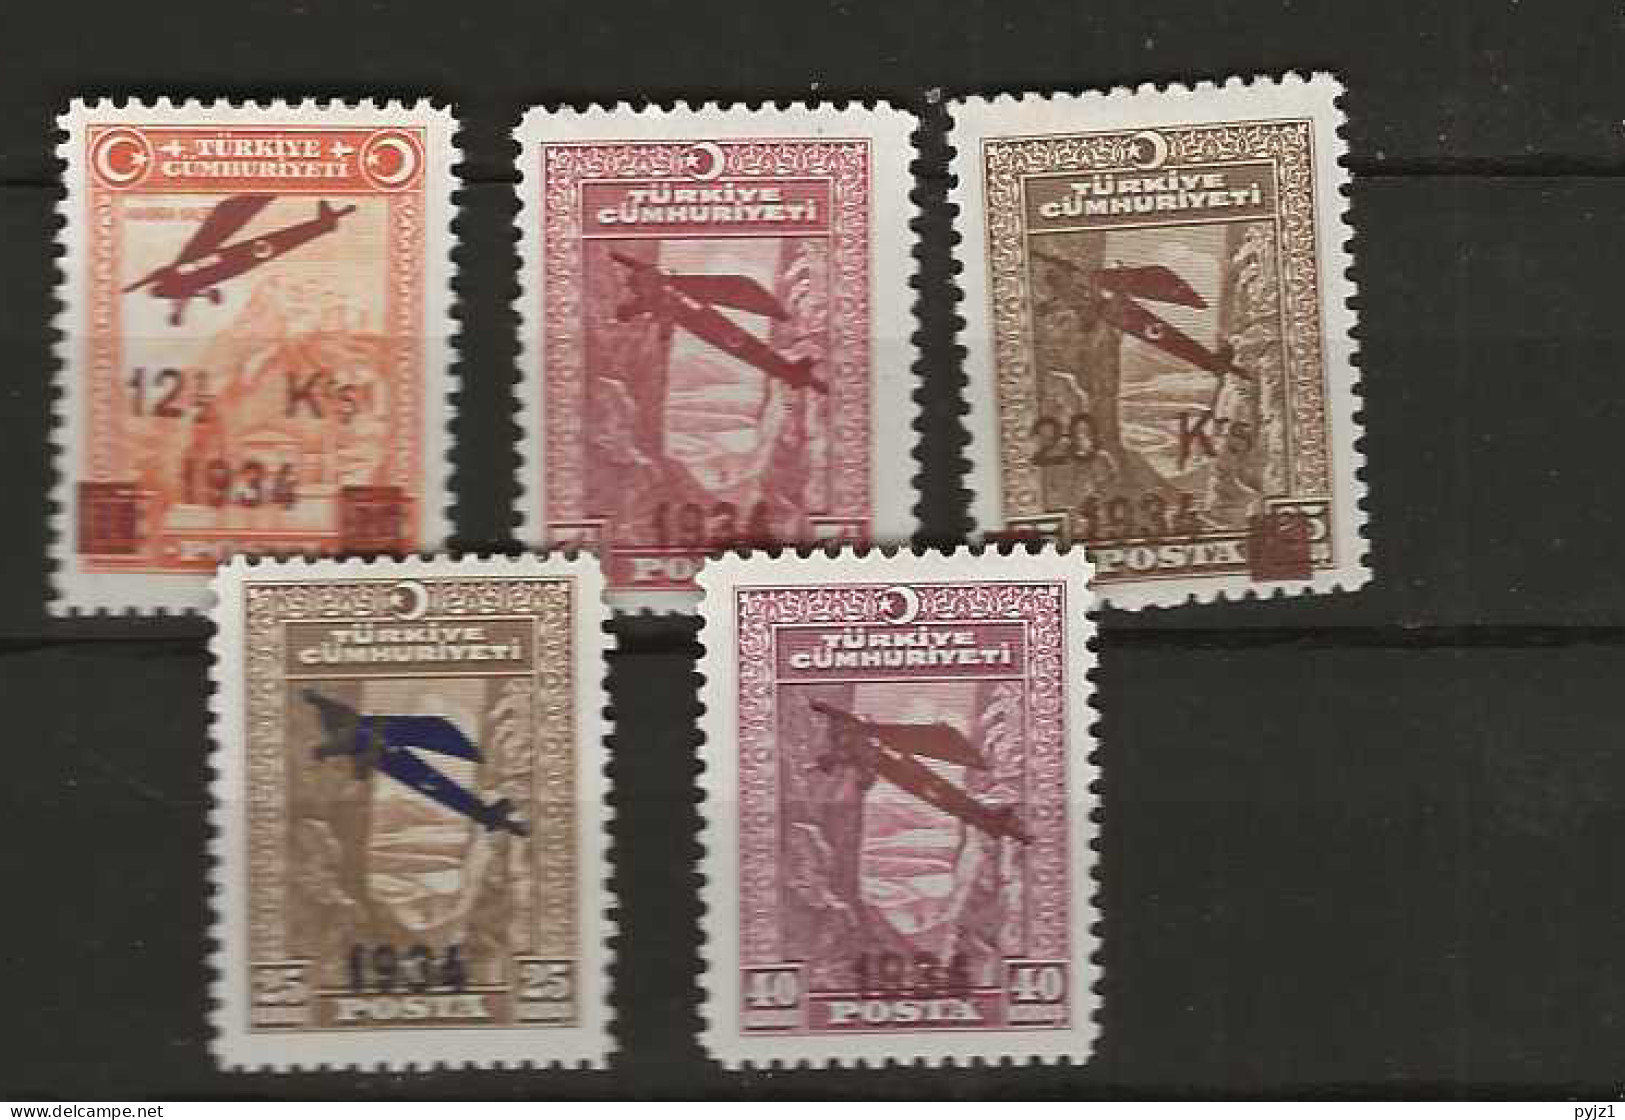 1934 MH Turkey Mi 980-84 - Unused Stamps